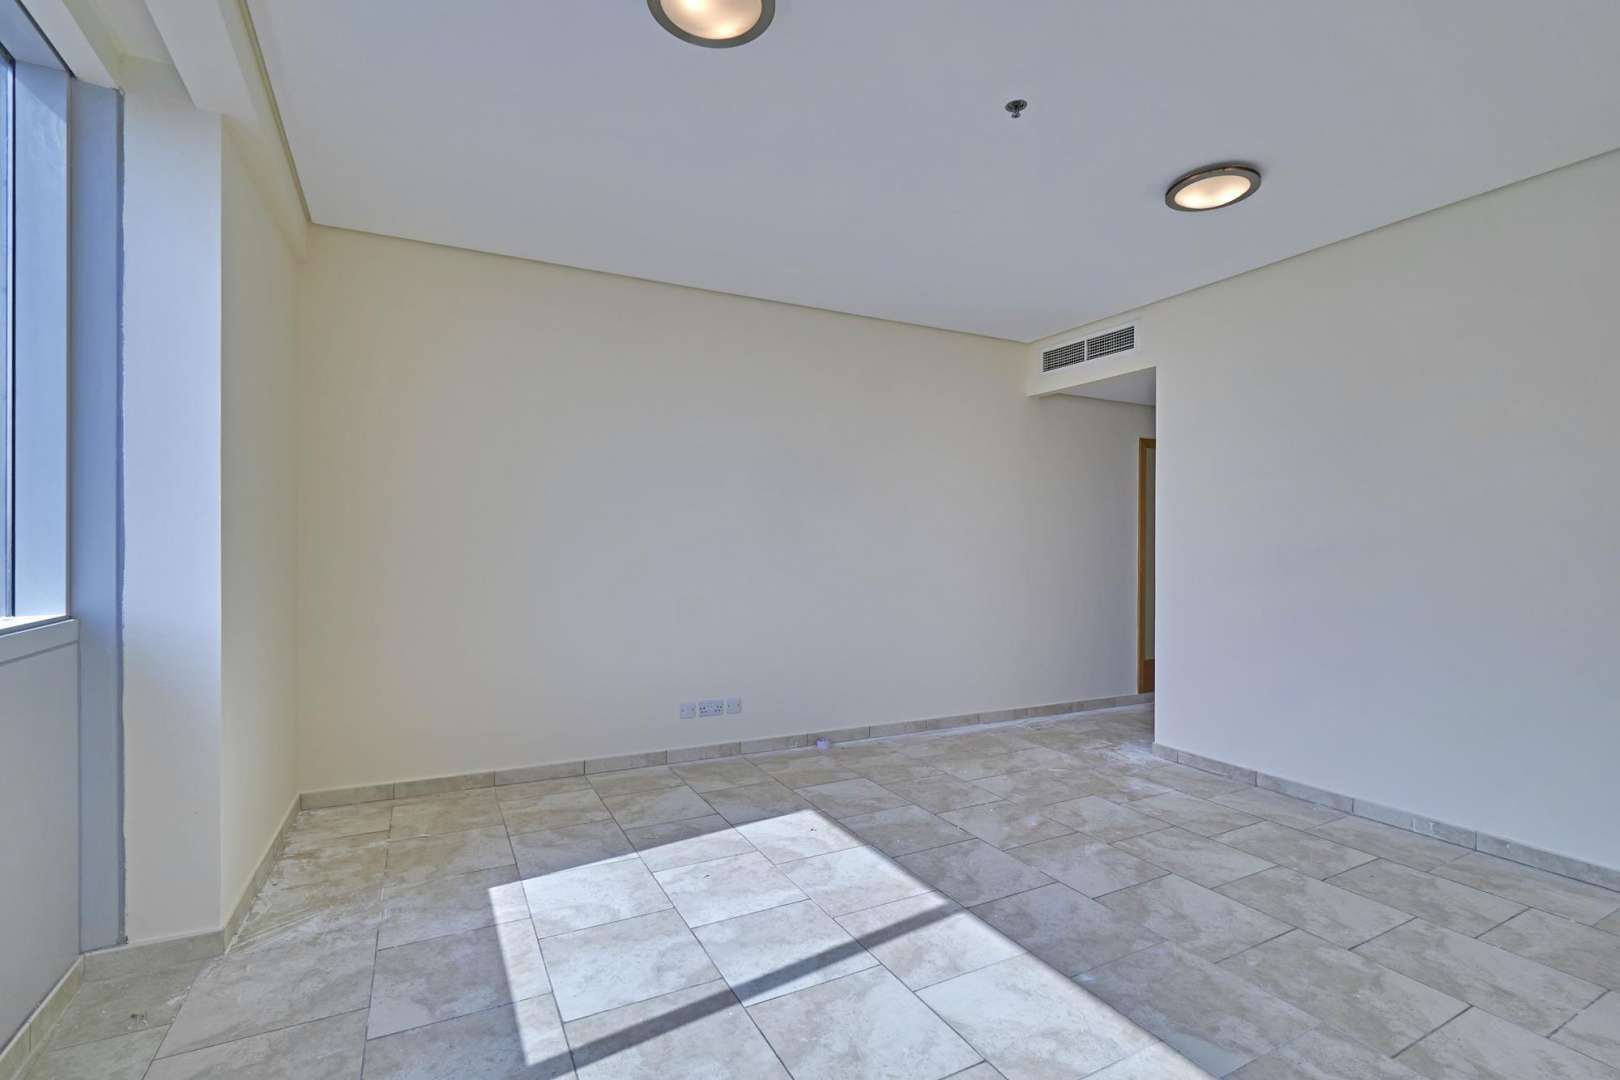 2 Bedroom Apartment For Rent Al Fattan Marine Tower Lp05664 57d48963b09a340.jpg